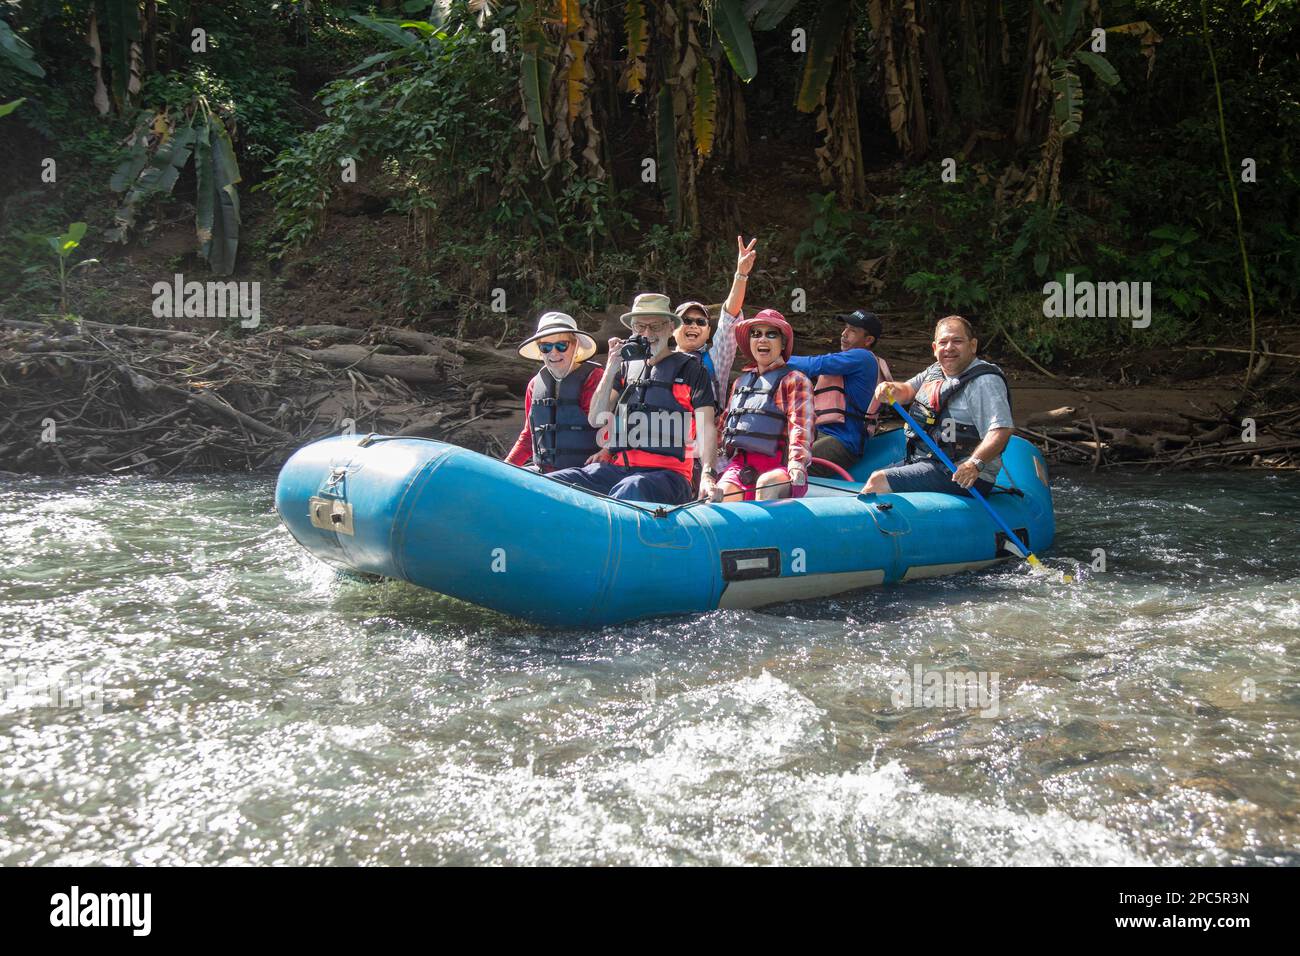 Muelle San Carlos, Costa Rica - Touristen auf einer malerischen Rafting-Tour auf dem Rio Penas Blancas. Stockfoto